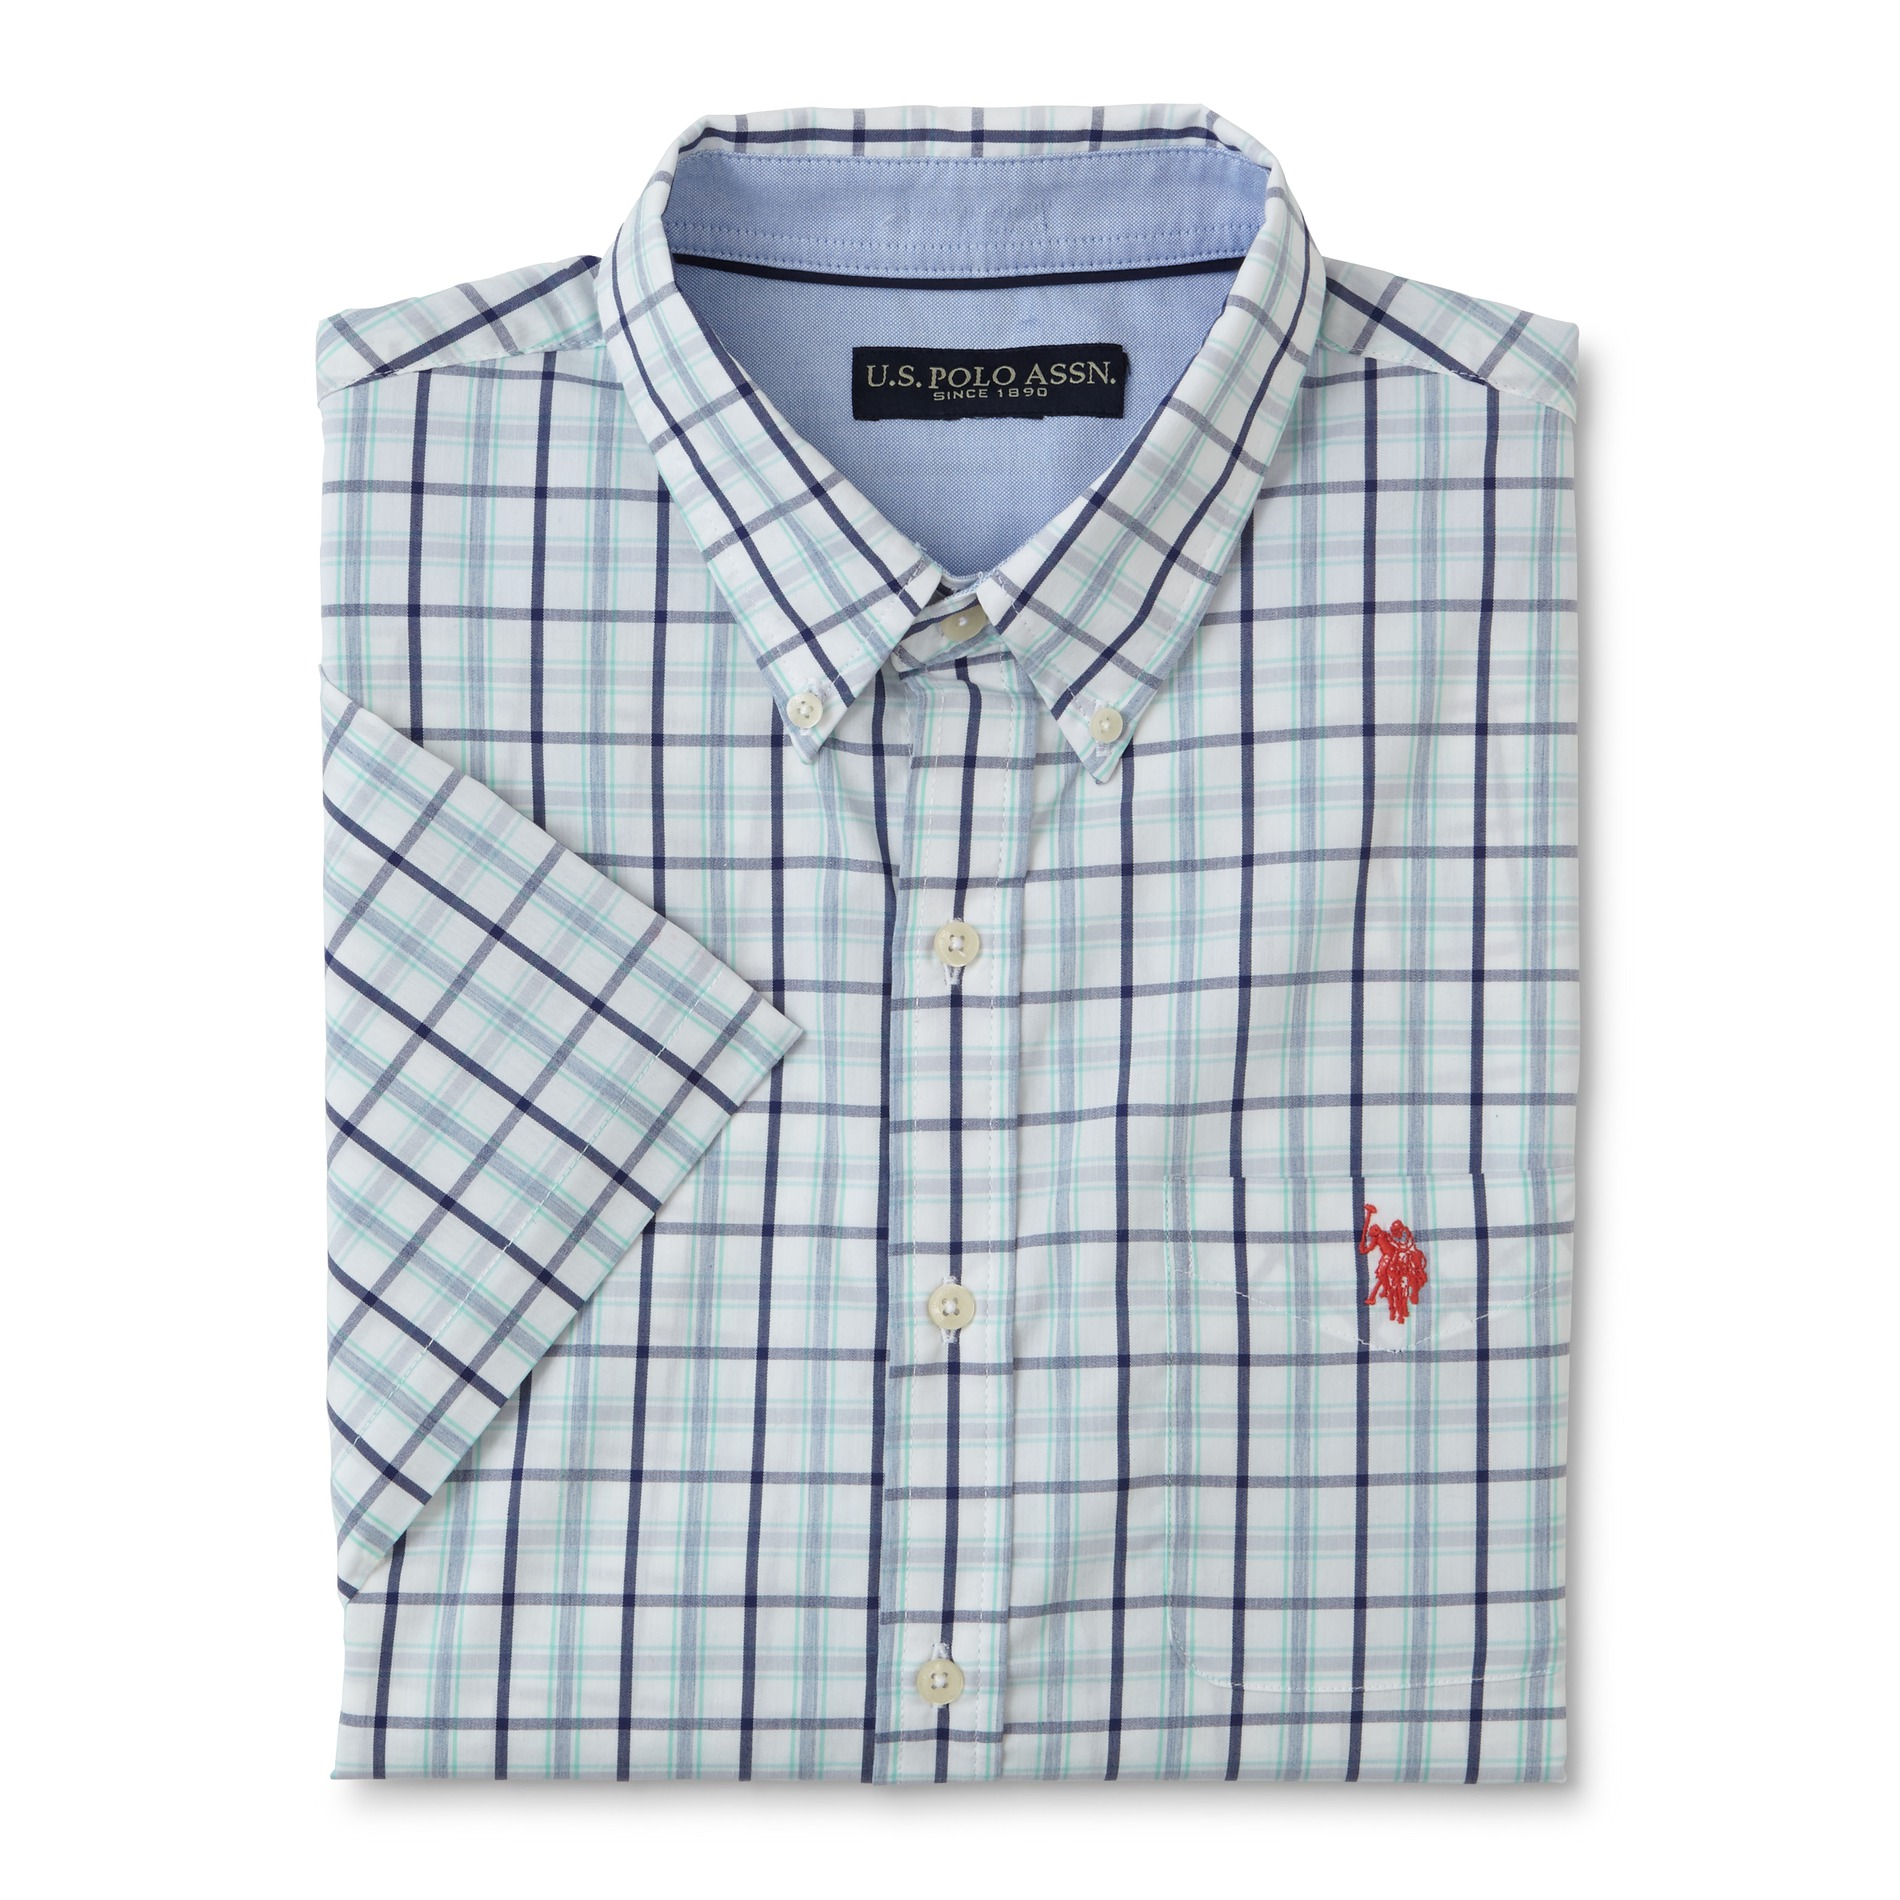 U.S. Polo Assn. Men's Short-Sleeve Button-Front Shirt